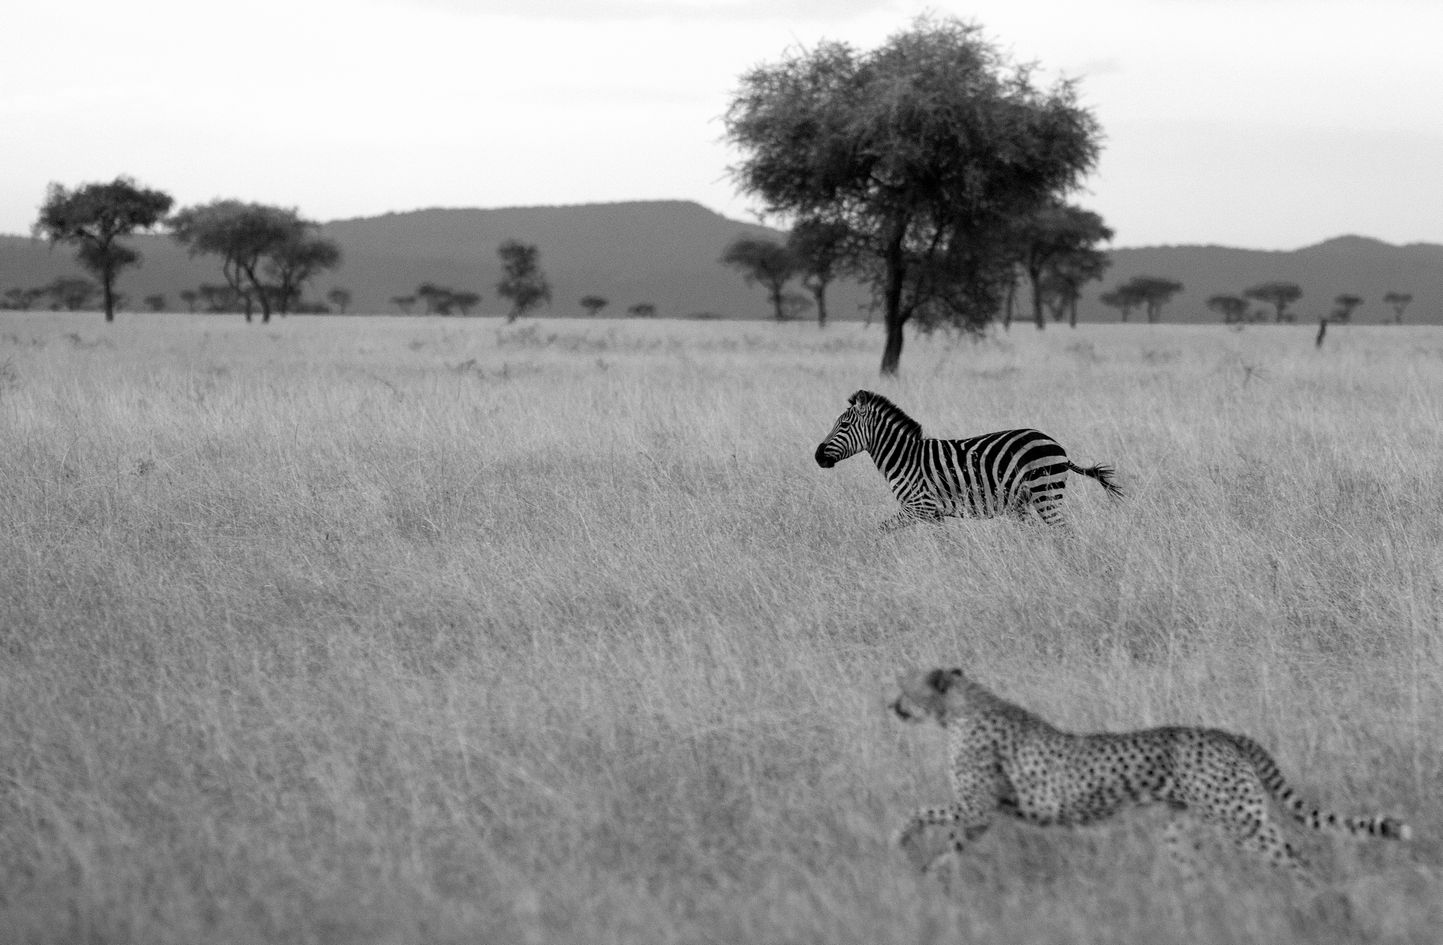 Cheetah-zebra